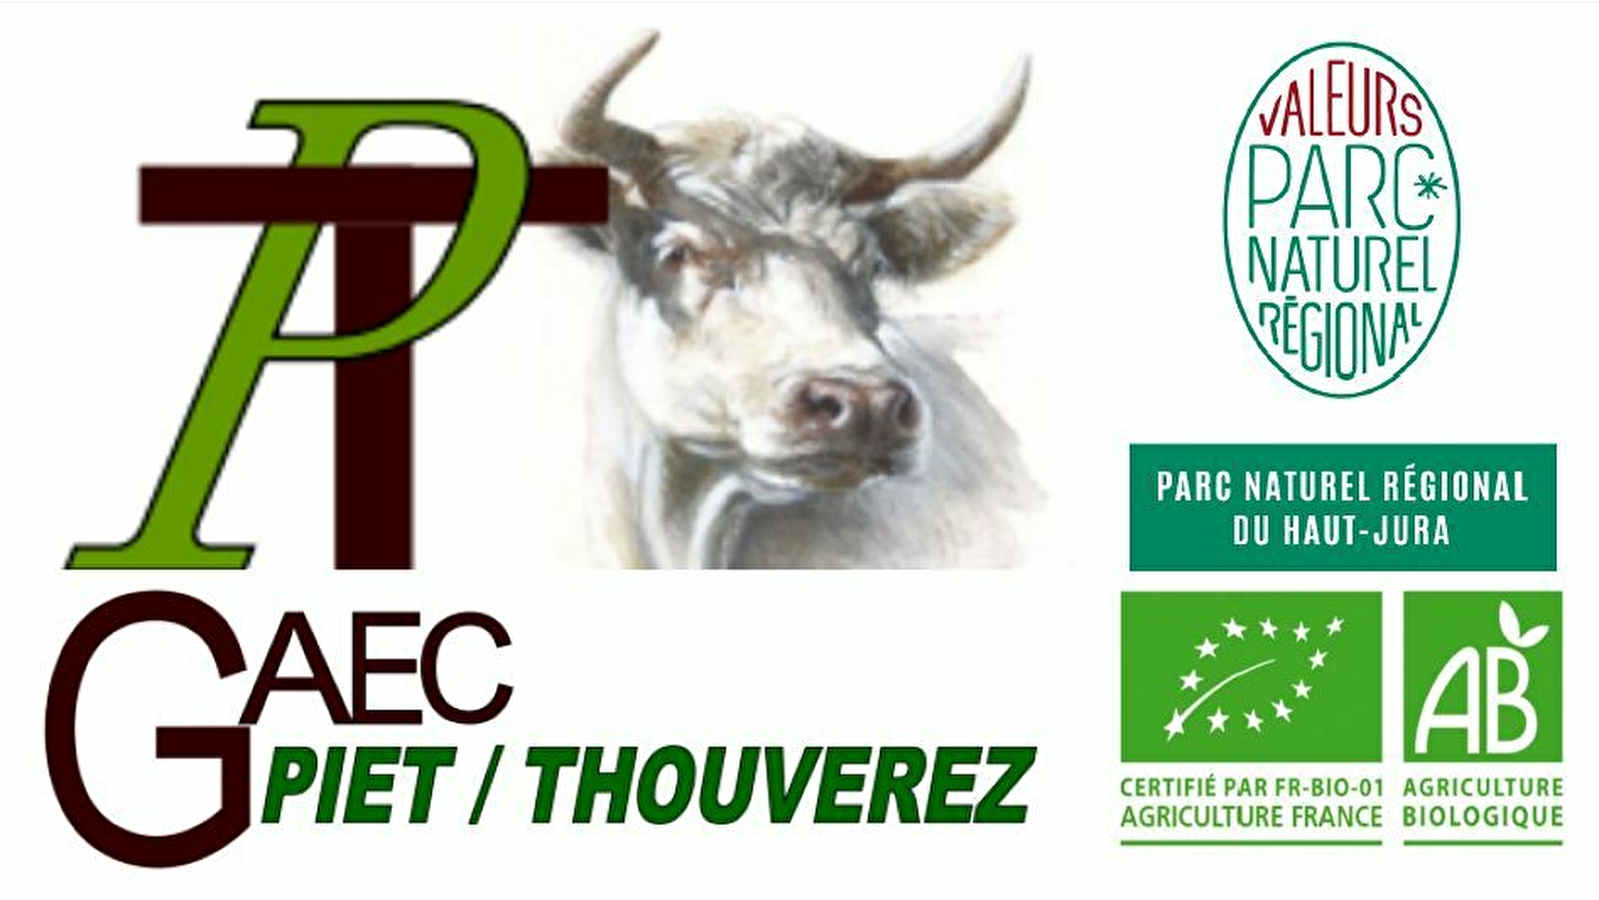 GAEC Piet / Thouverez